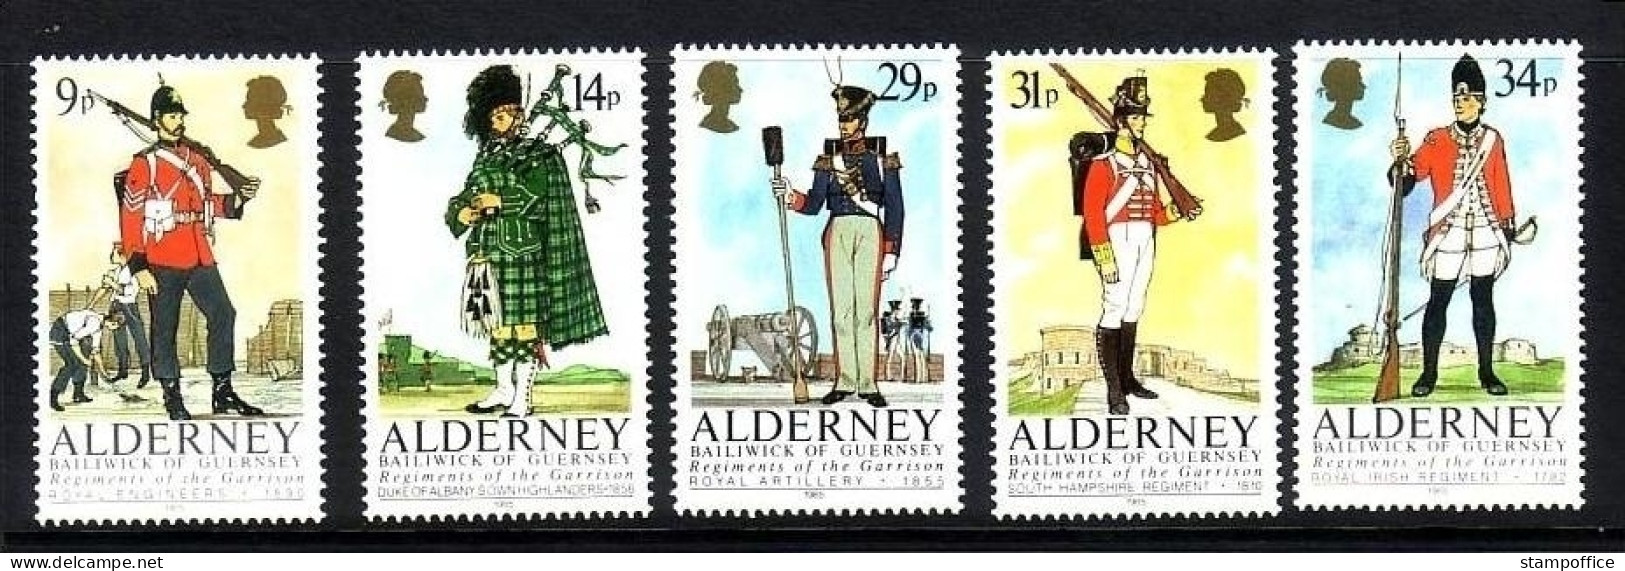 ALDERNEY MI-NR. 23-27 POSTFRISCH(MINT) HISTORISCHE UNIFORMEN 1985 - Alderney